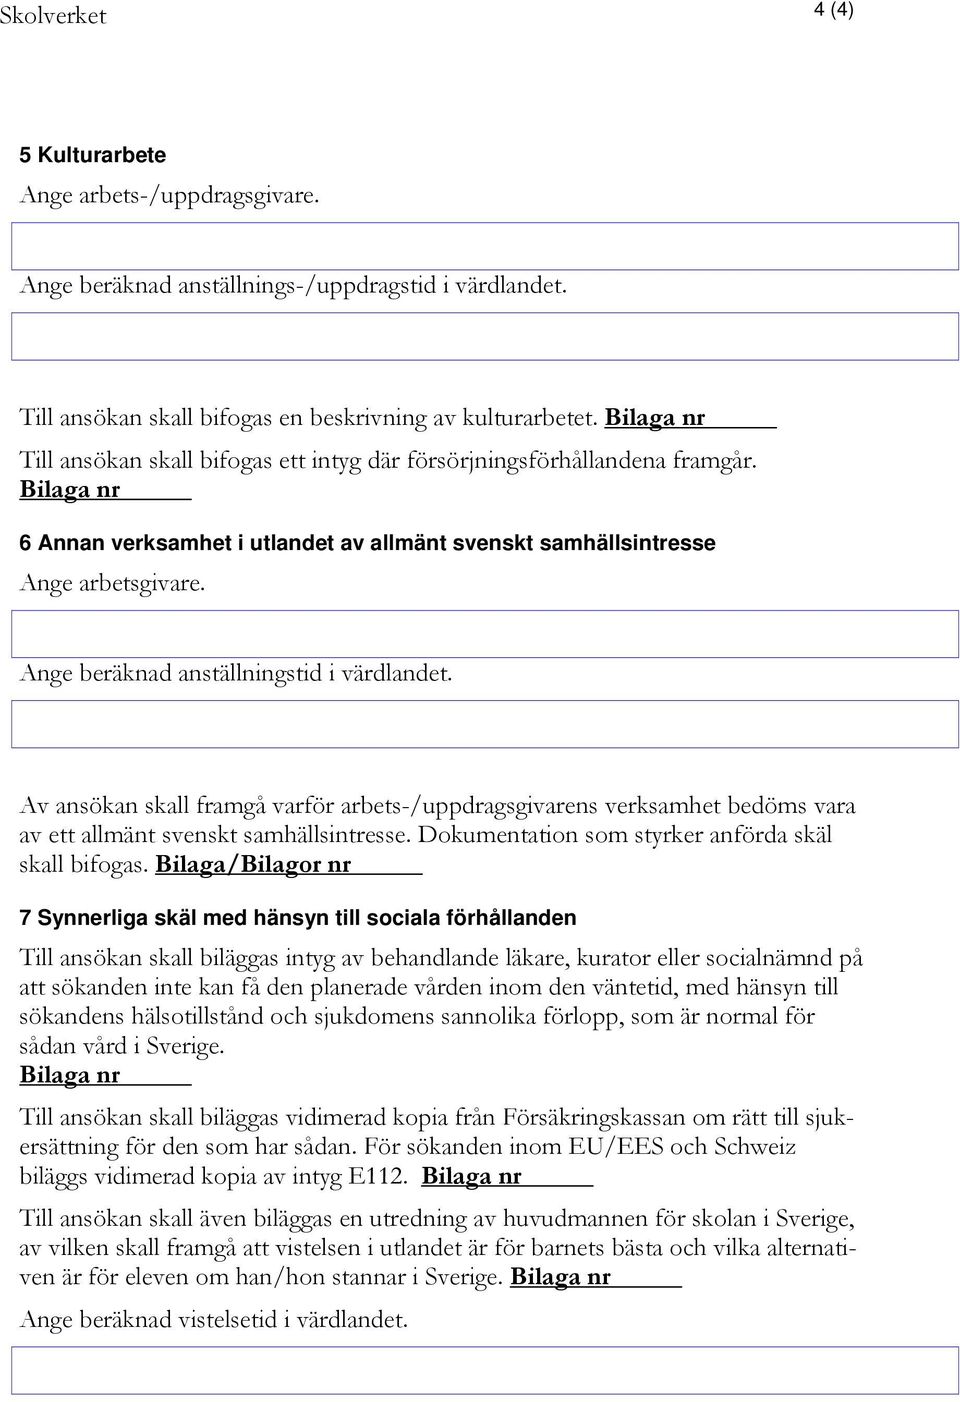 Av ansökan skall framgå varför arbets-/uppdragsgivarens verksamhet bedöms vara av ett allmänt svenskt samhällsintresse. Dokumentation som styrker anförda skäl skall bifogas.